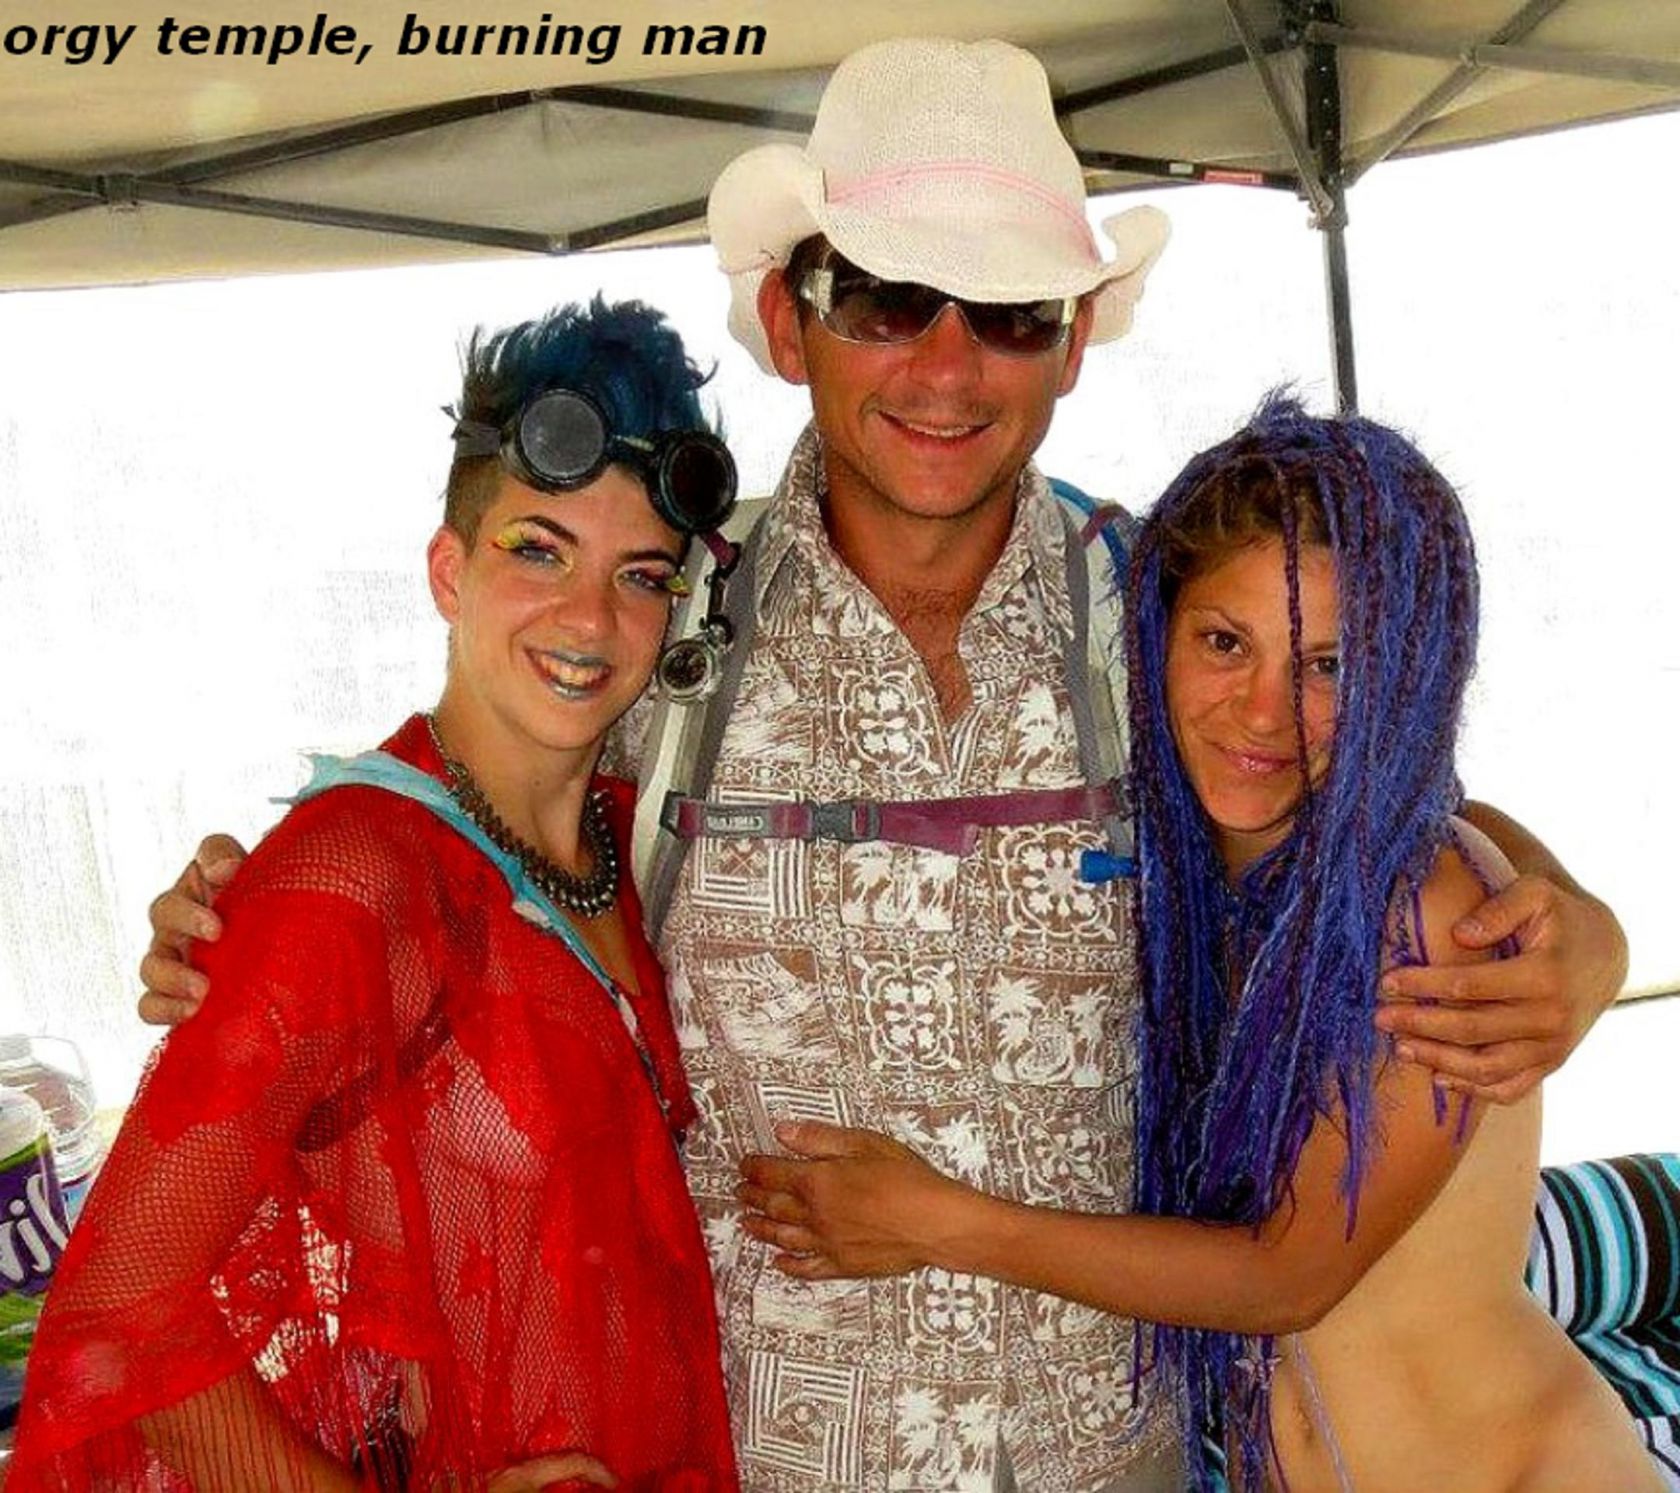 More fun at Burning Man